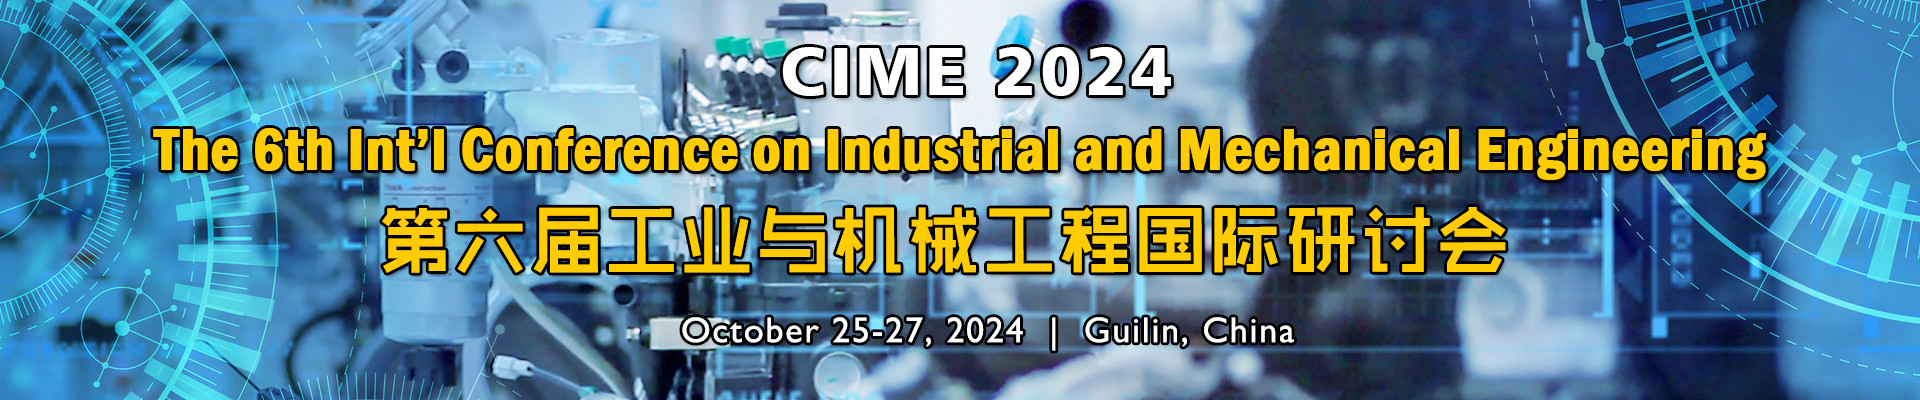 第六届工业与机械工程国际研讨会(CIME 2024)